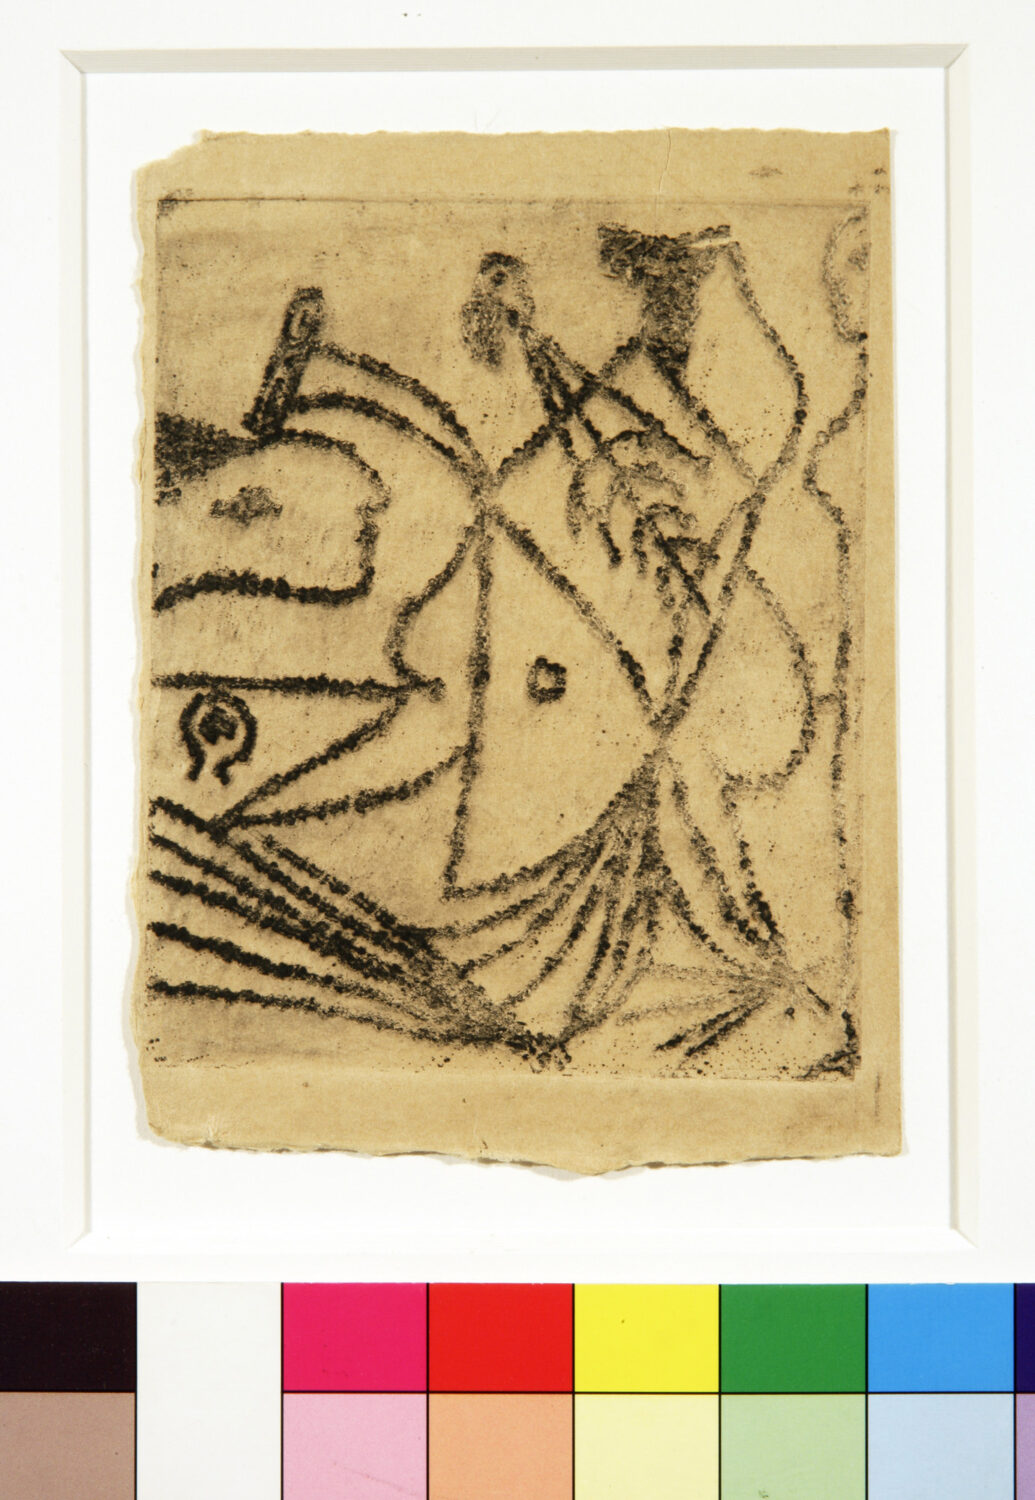 thumbnail of Etching by Pablo Picasso titled Jeux Au Bord de la Mer II.